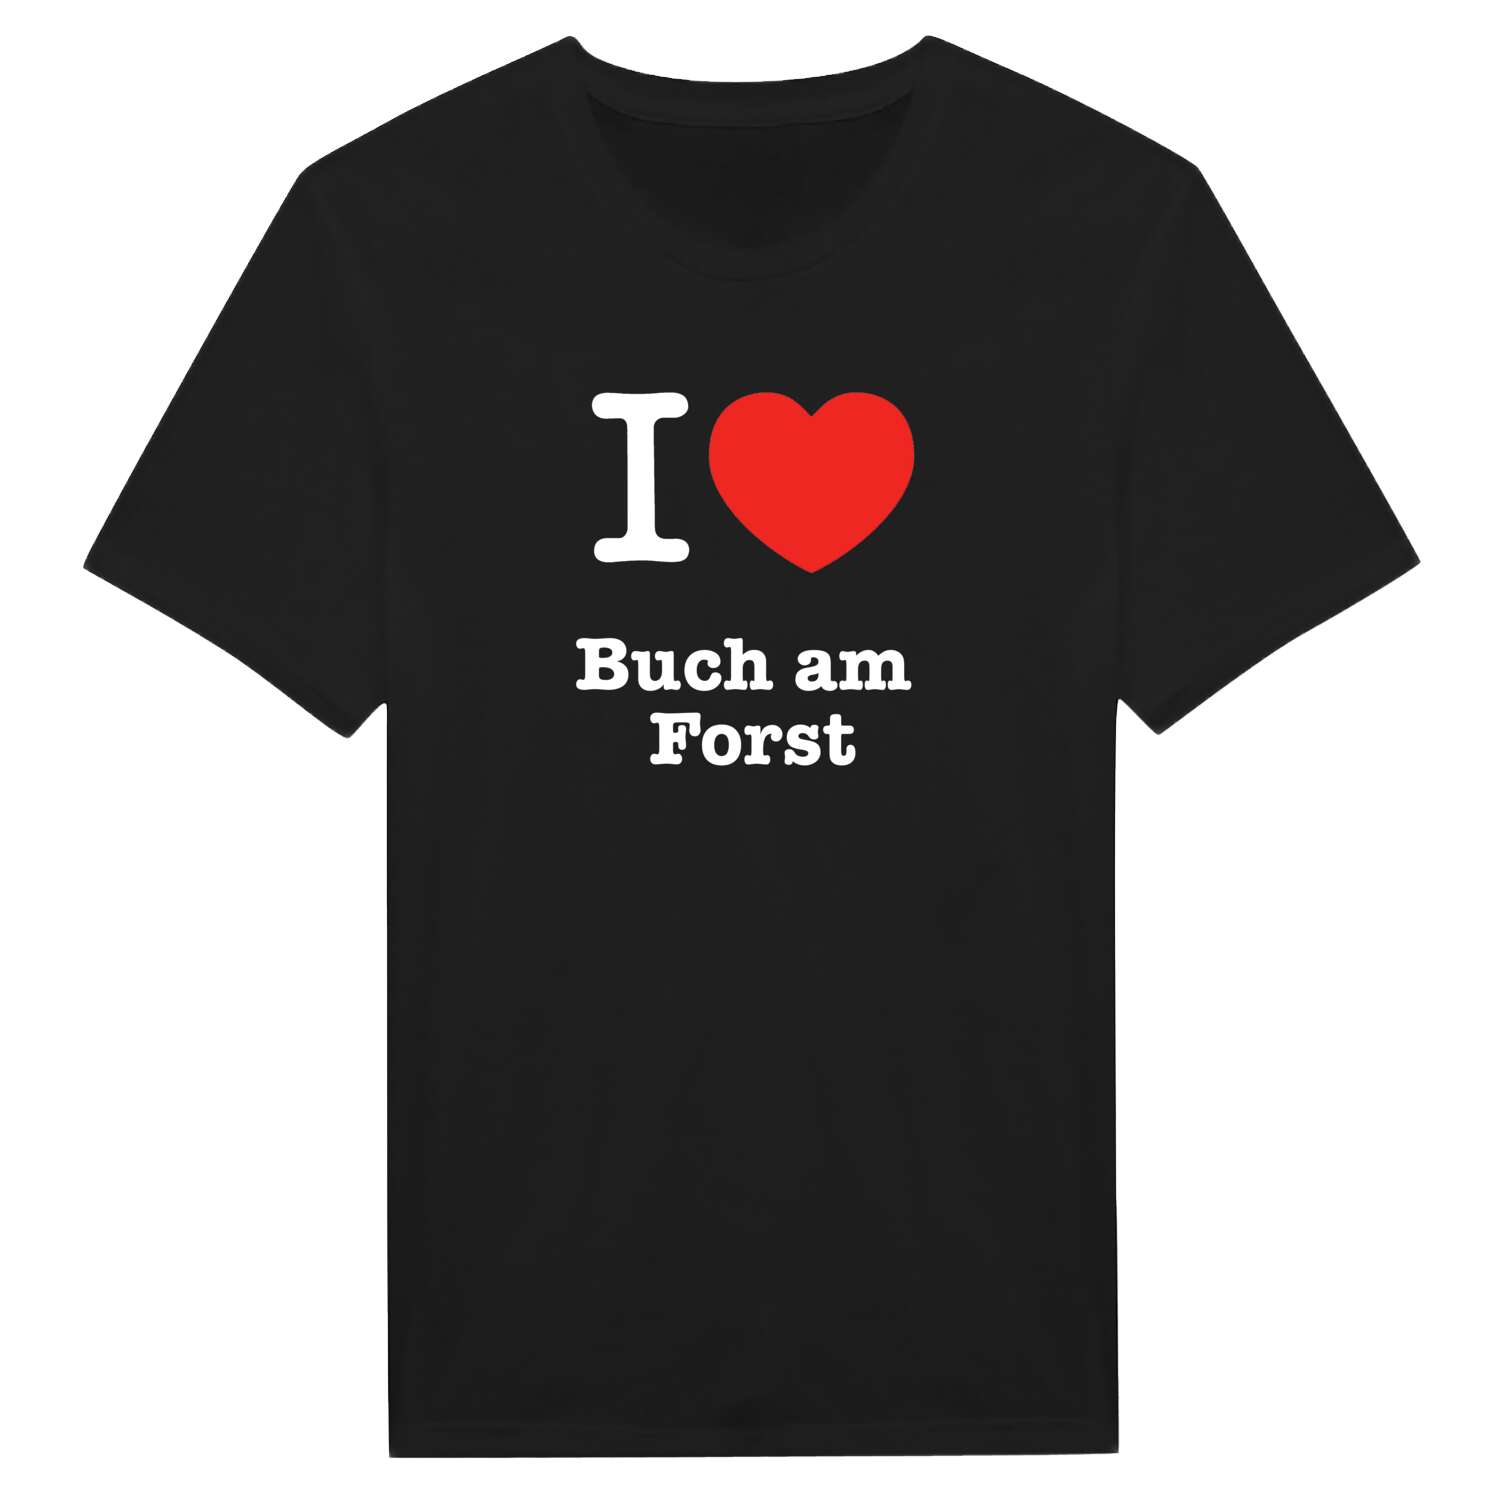 Buch am Forst T-Shirt »I love«